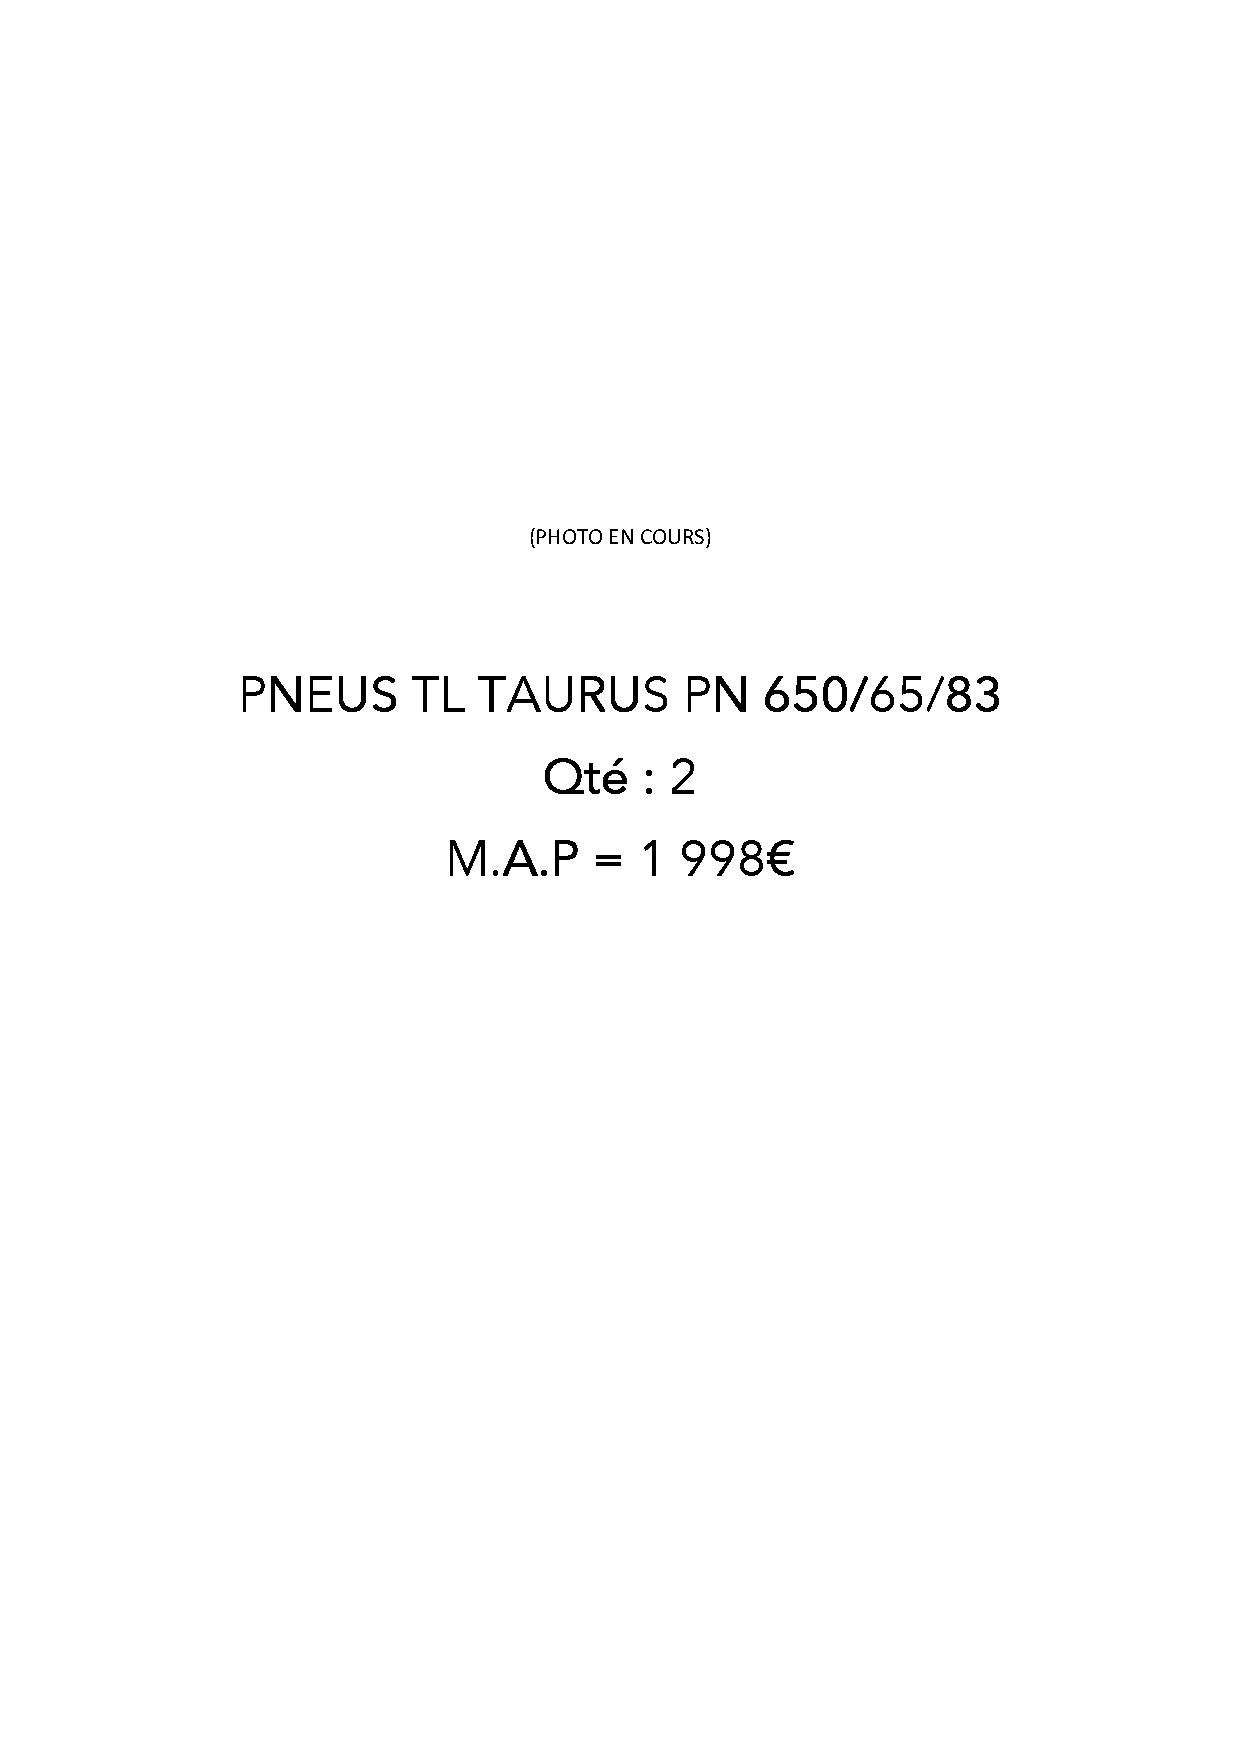 PNEUS TL TAURUS PN 650/65/83 - QTE = 2 MAP = 1 998€ - frais de 10%